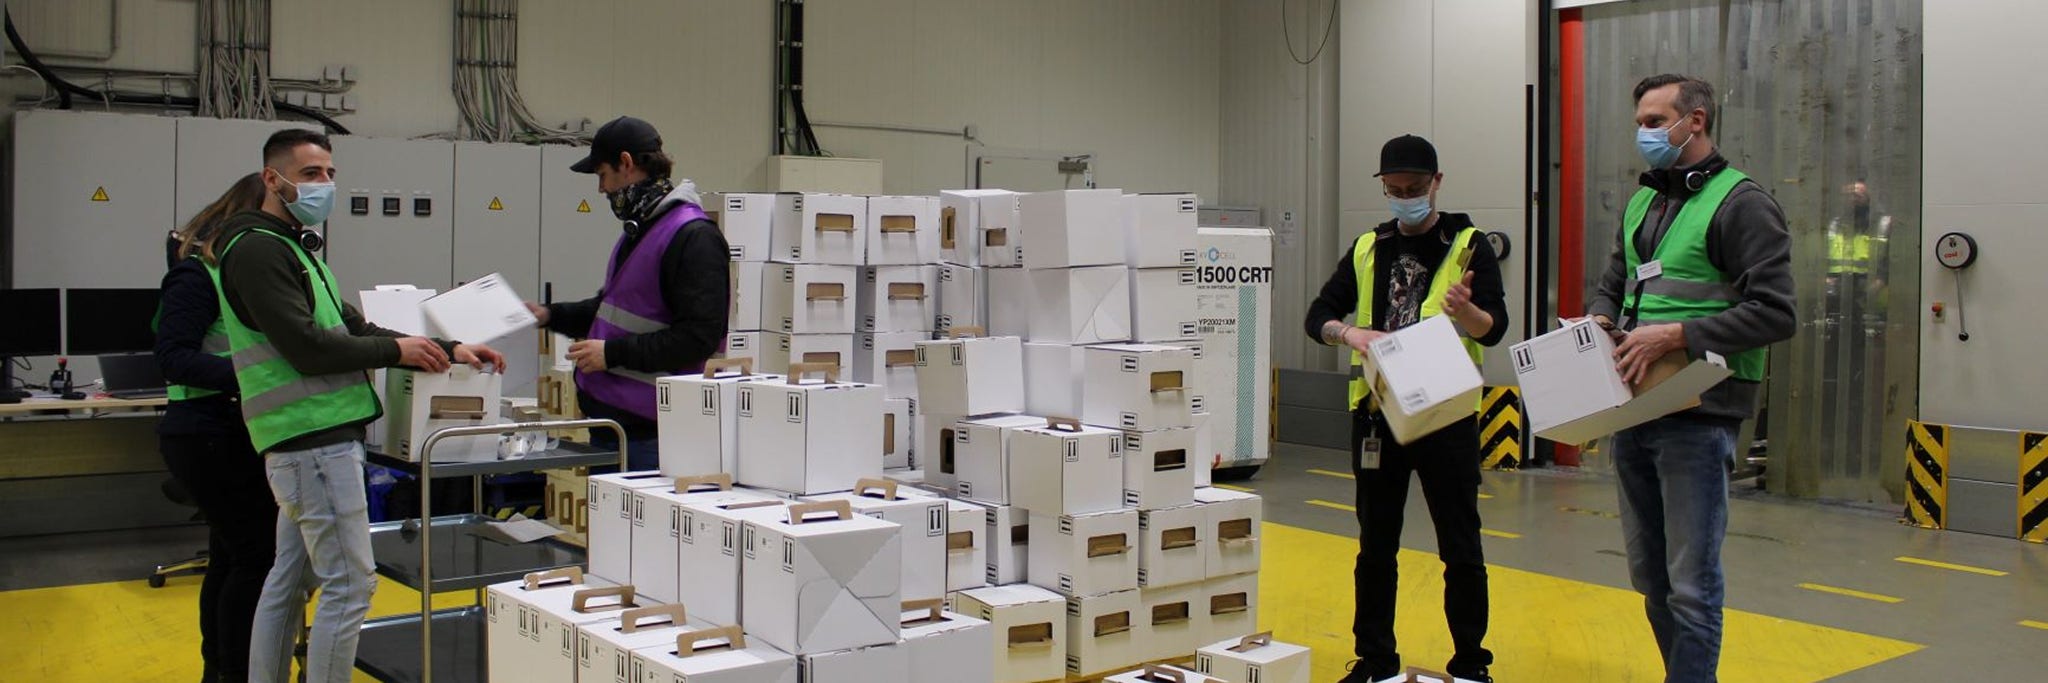 Mehrere BioNTech-Mitarbeiter mit Kartons in einer Lagerhalle